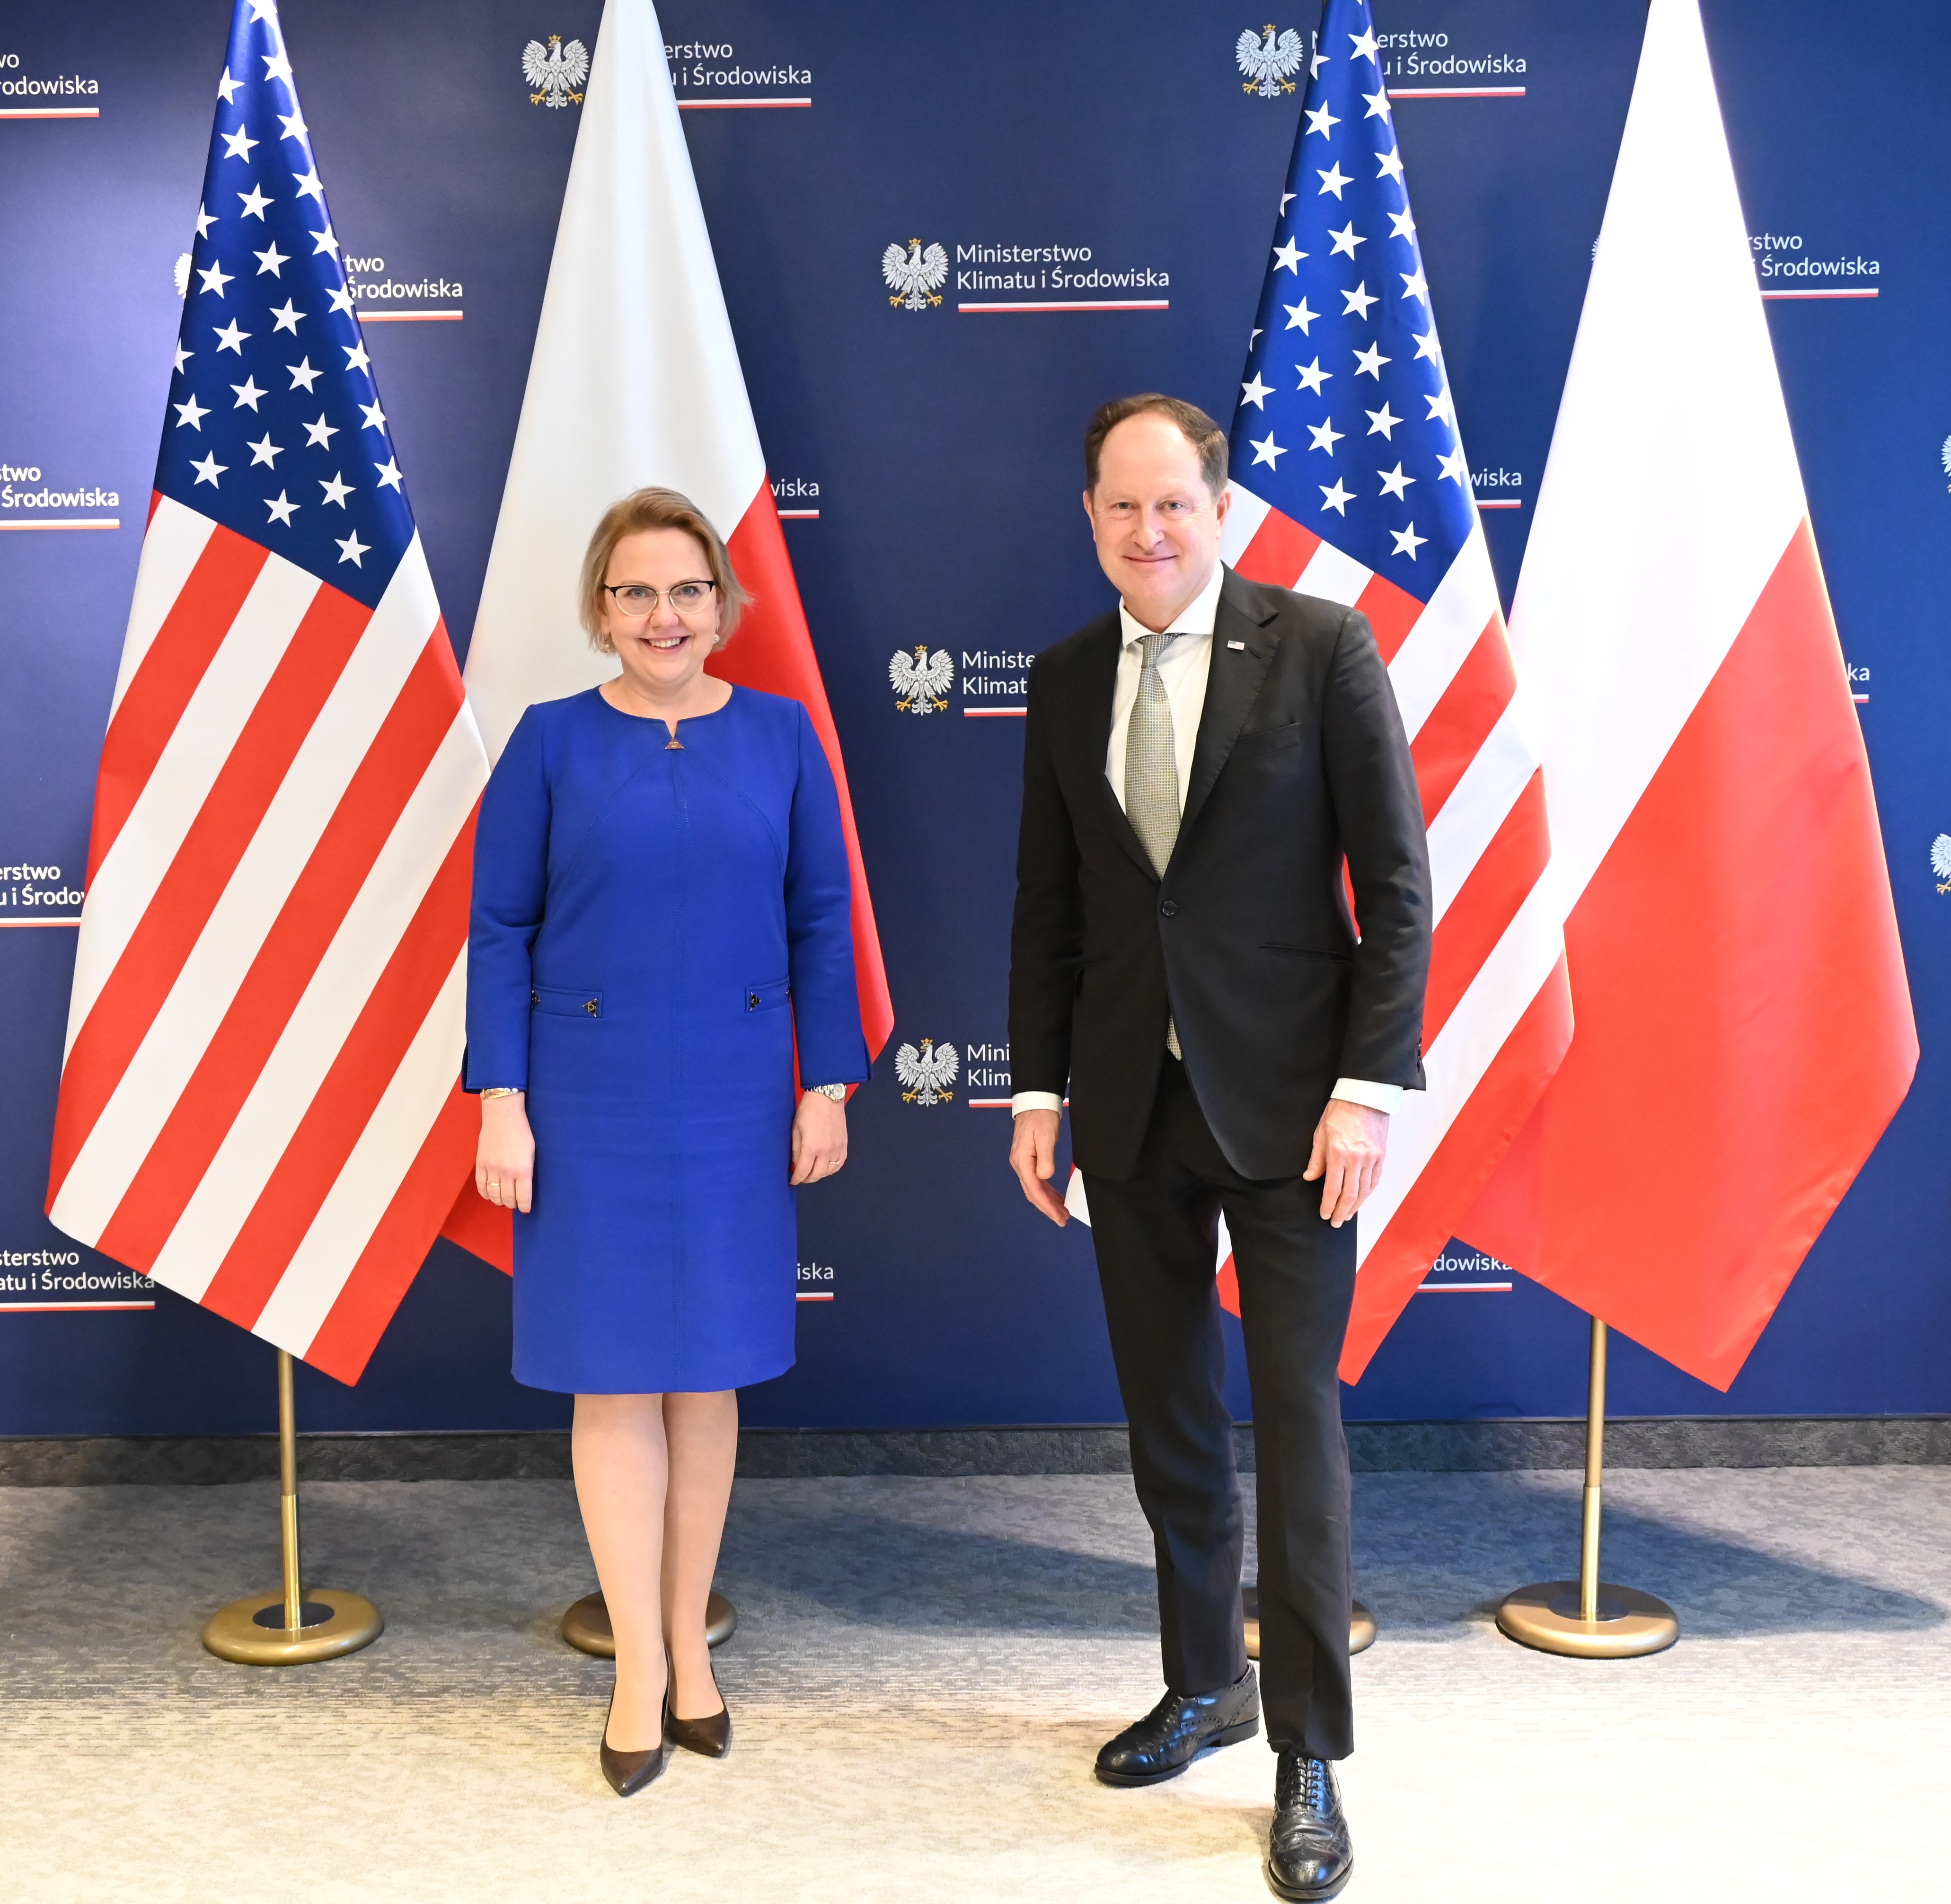 Spotkanie minister Anny Moskwy z Ambasadorem Stanów Zjednoczonych w Polsce Markiem Brzezińskim.